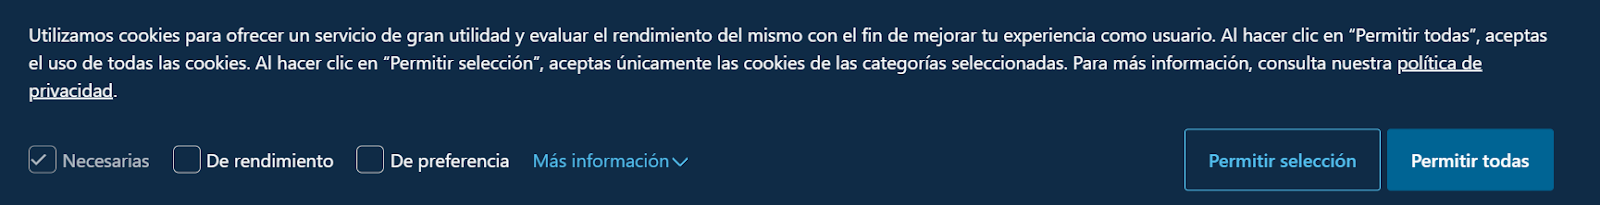 Ejemplo de aviso de Cookies de una página web